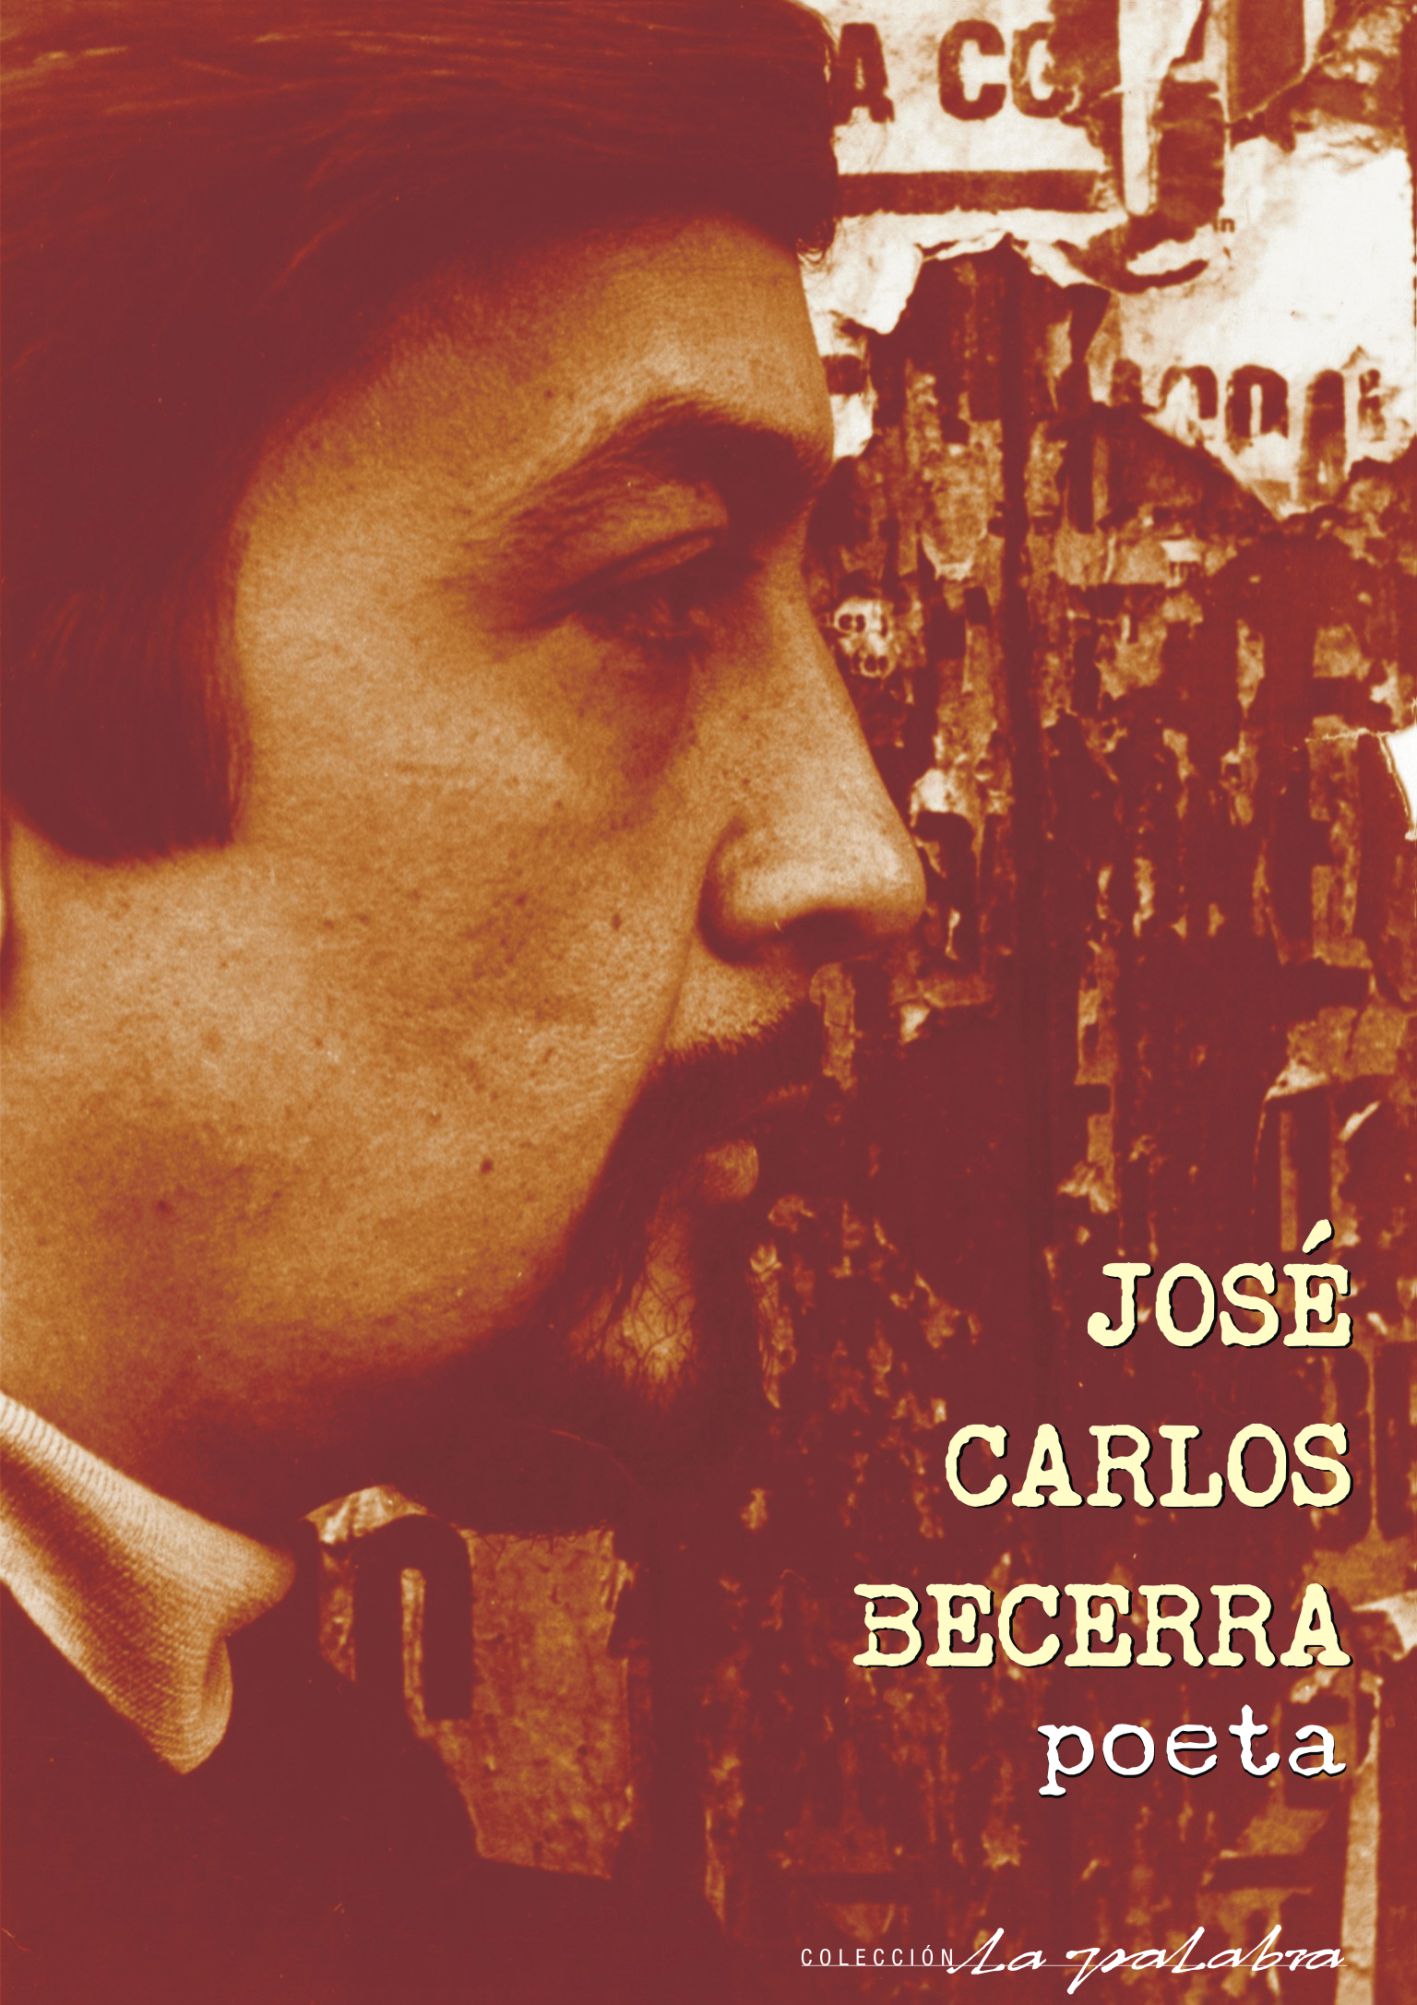 JOSÉ CARLOS BECERRA – poeta (Descarga digital)